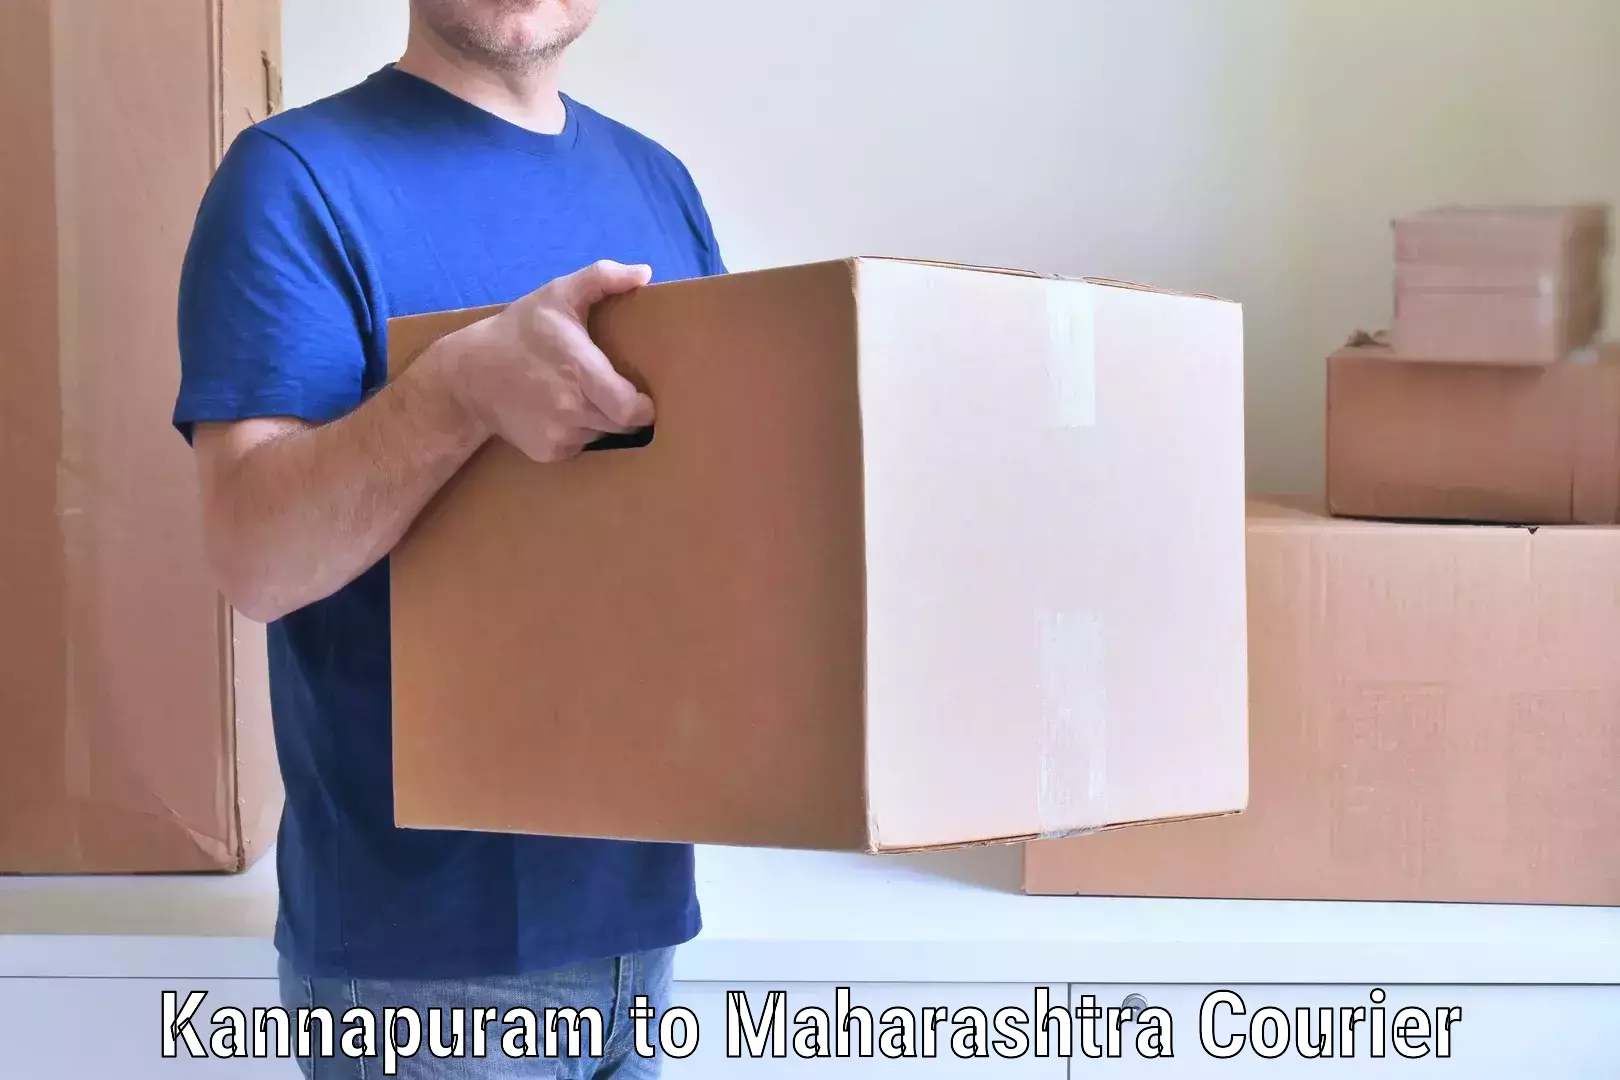 Household moving and handling Kannapuram to Worli